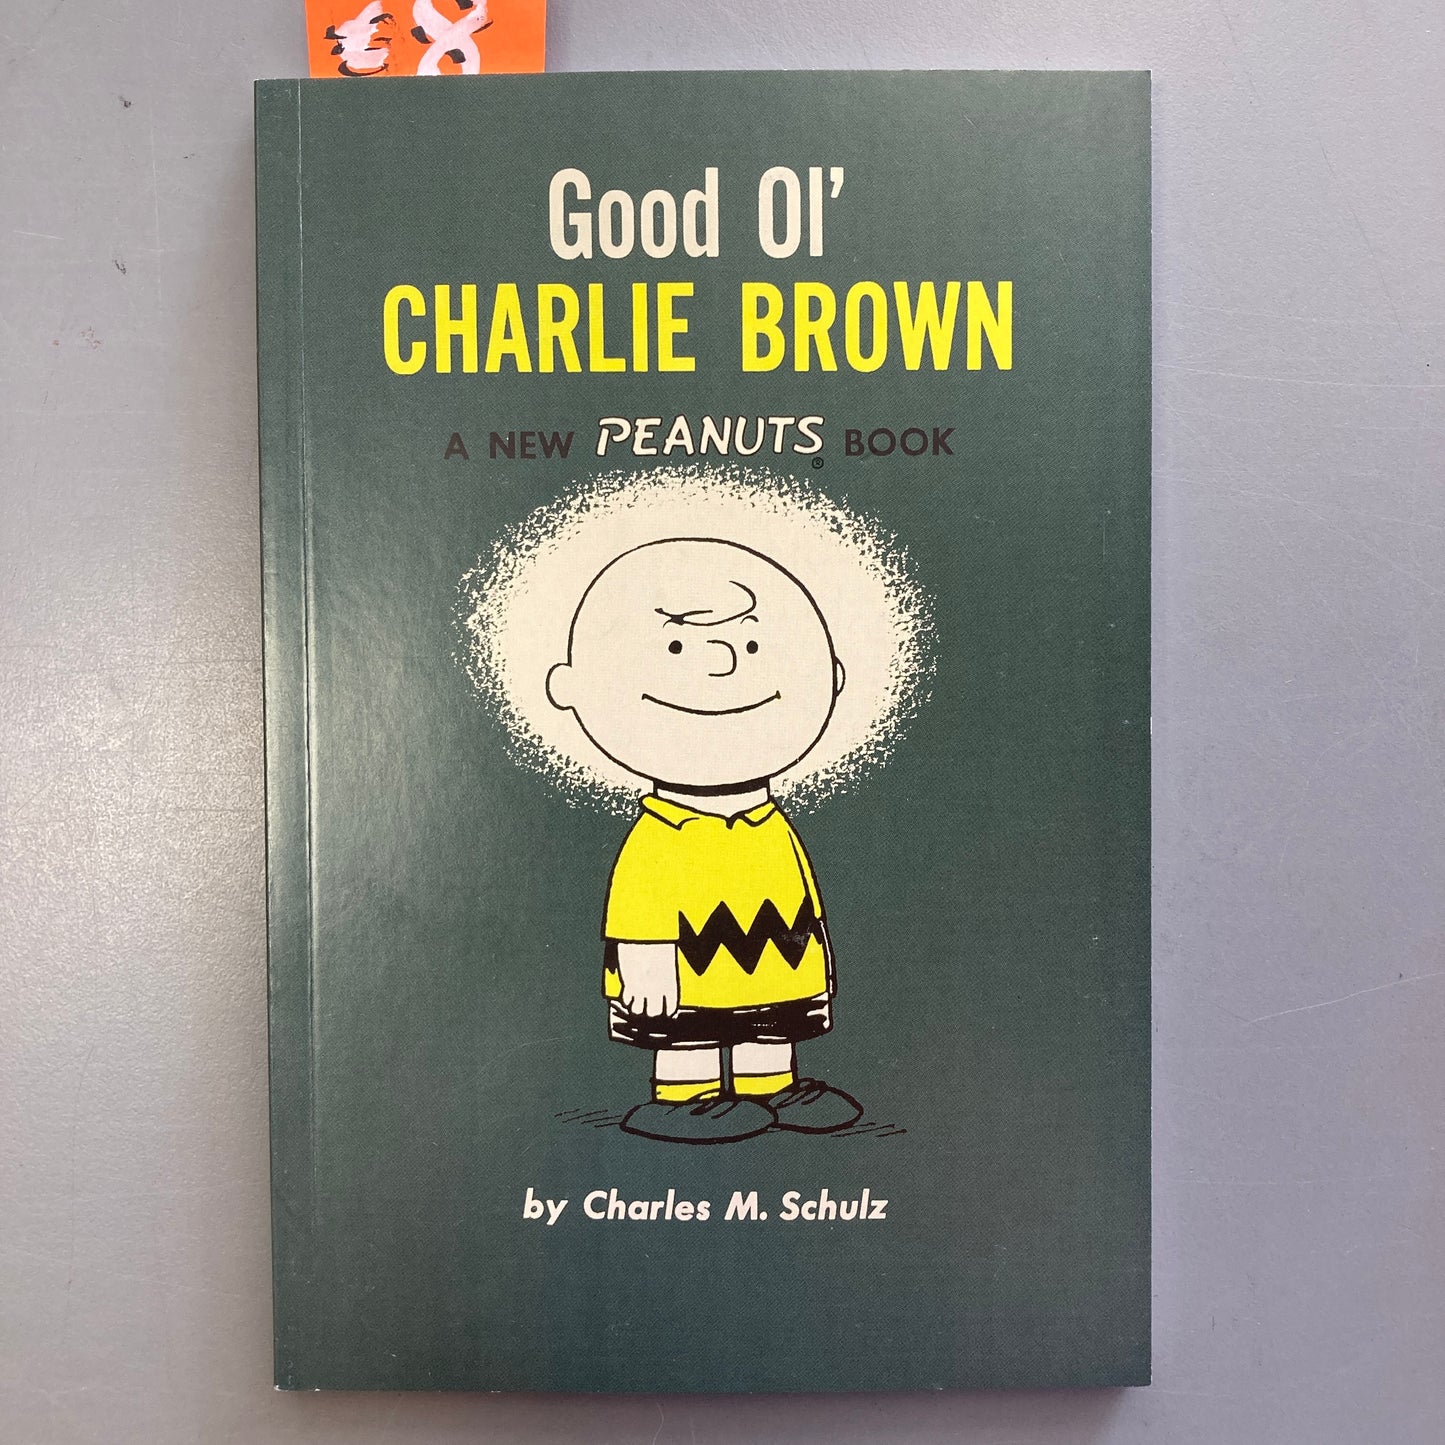 Good Ol' Charlie Brown